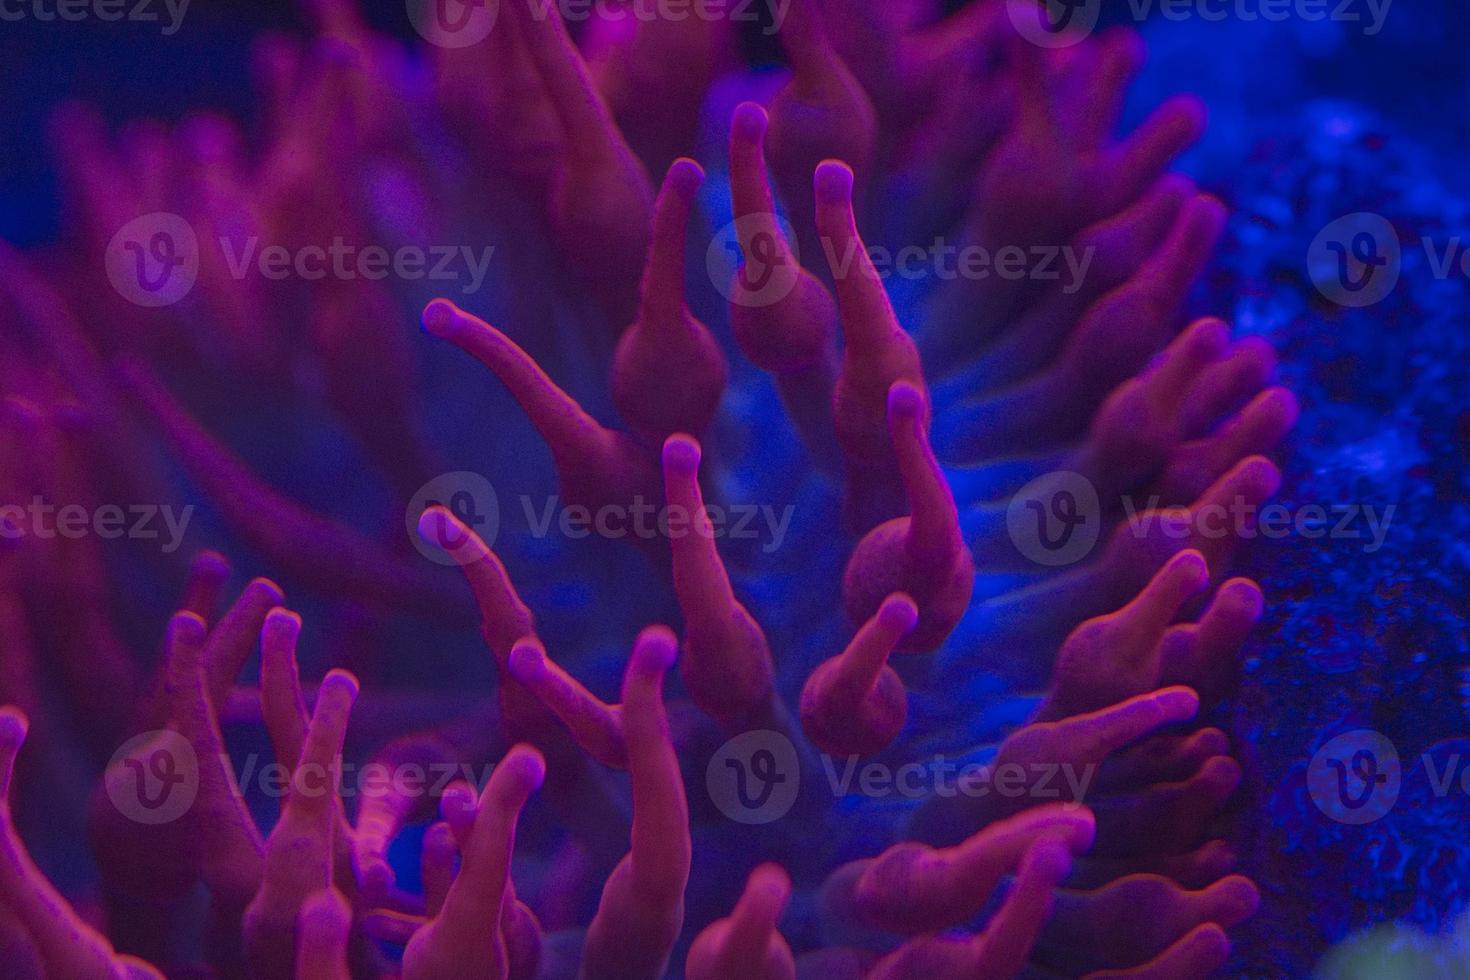 macro de coraux durs sur la lumière de plongée de nuit photo